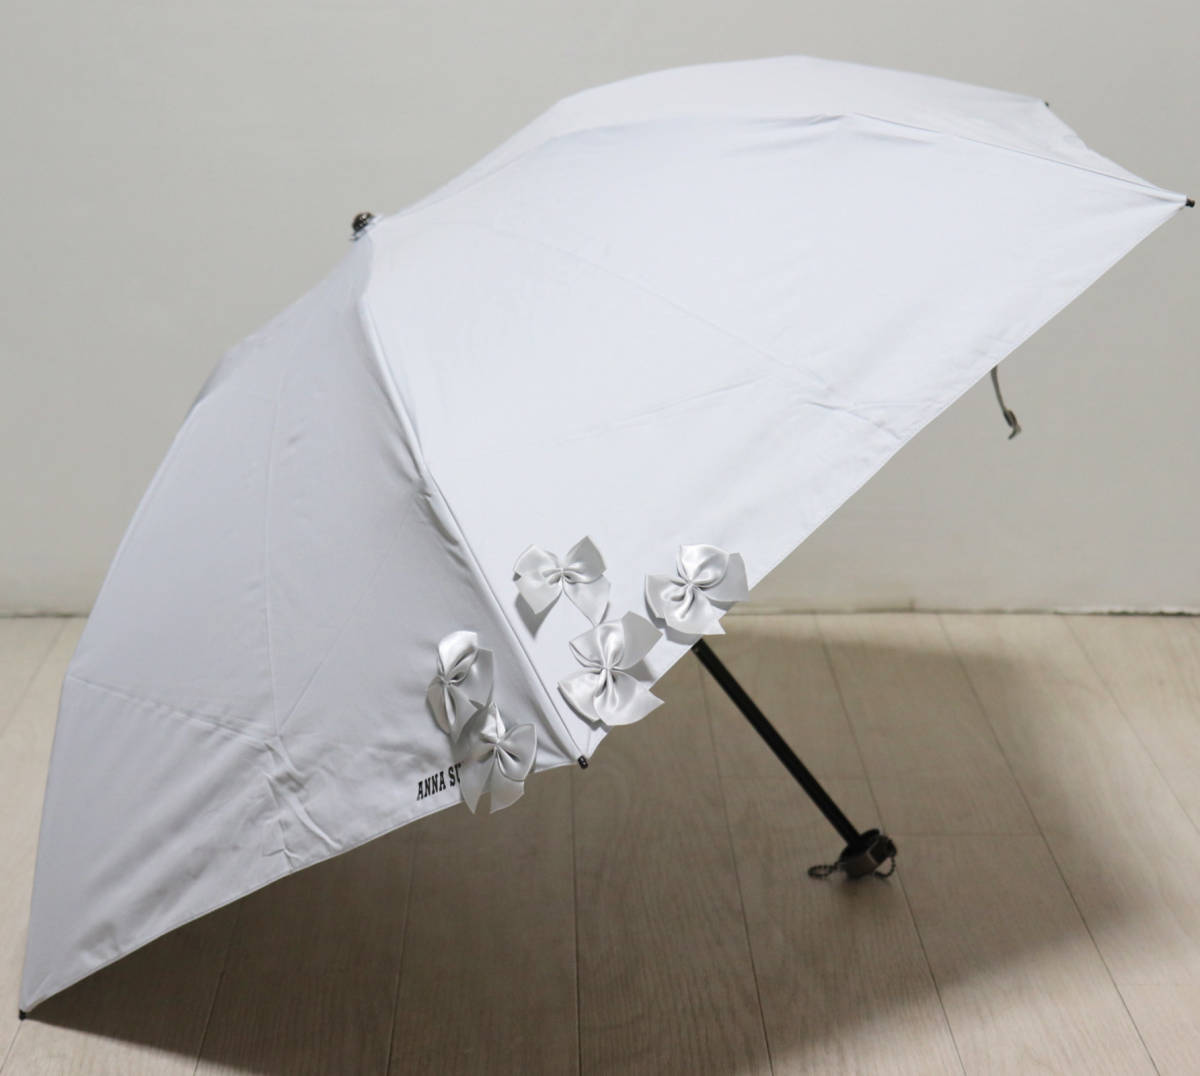 新品タグ付き【ANNA SUI アナスイ】晴雨兼用 折り畳み傘 リボンが可愛い 雨傘 日傘 遮光生地 v2771